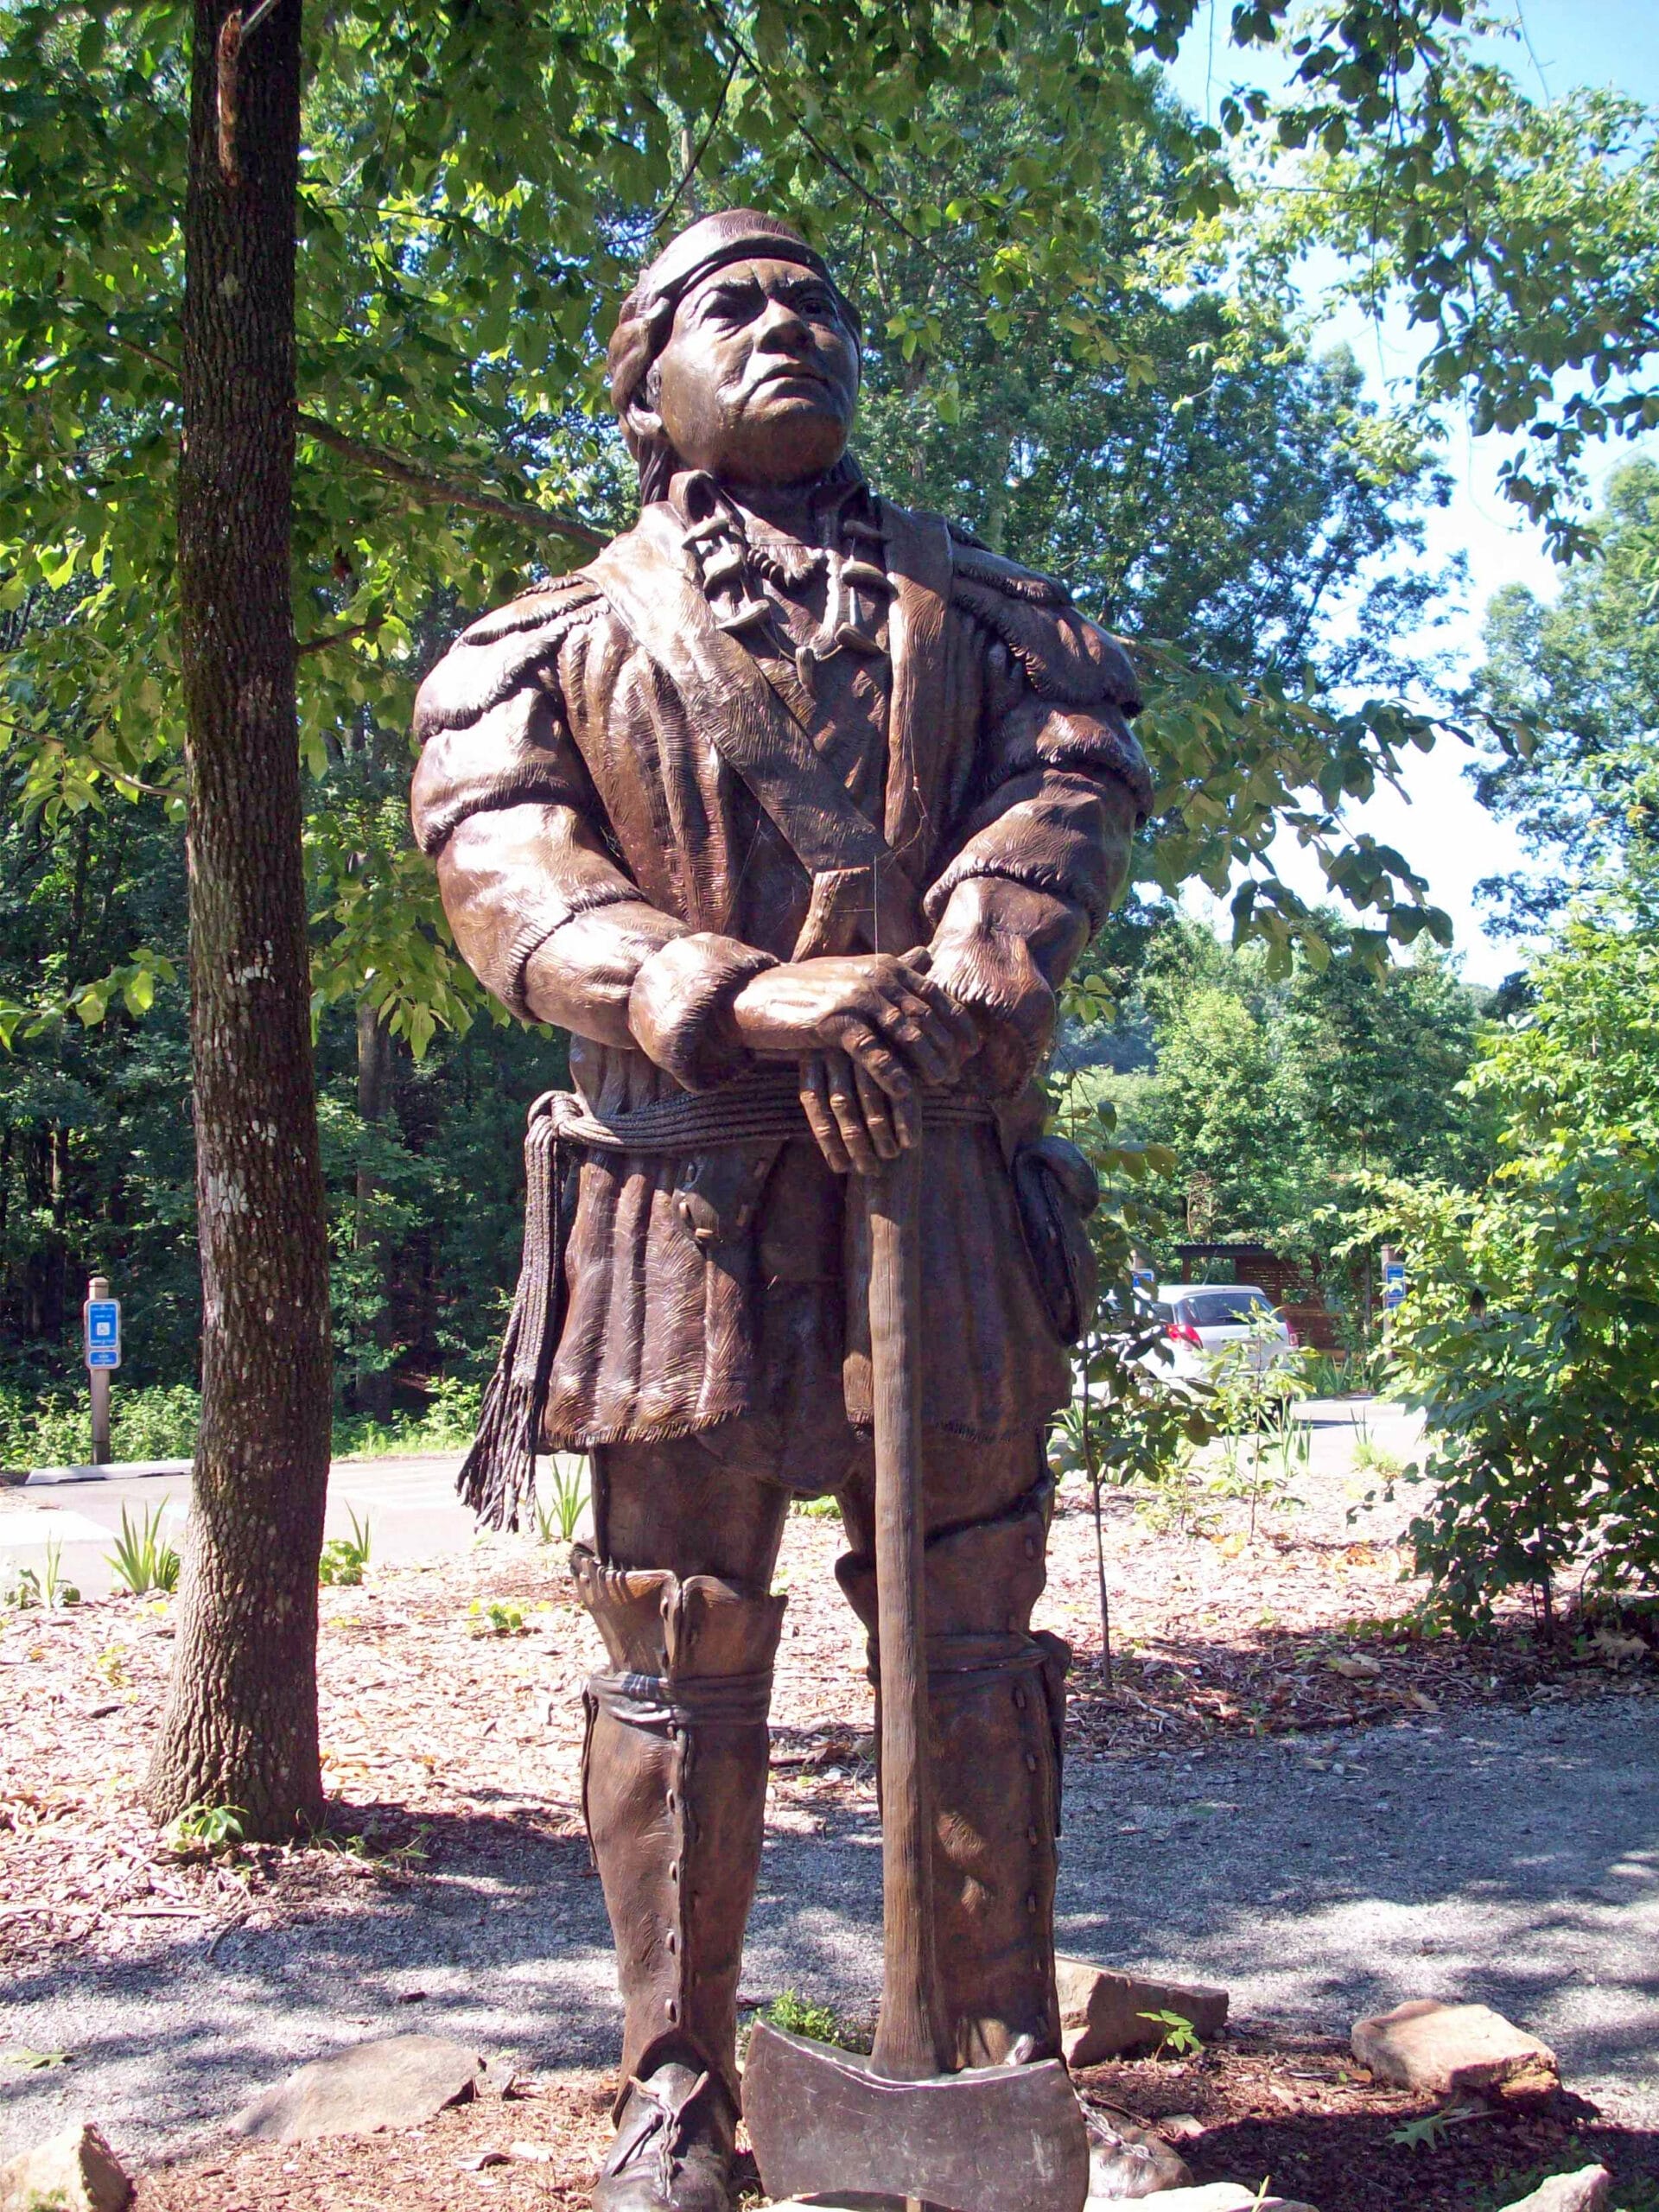 A statue of a man holding an axe.